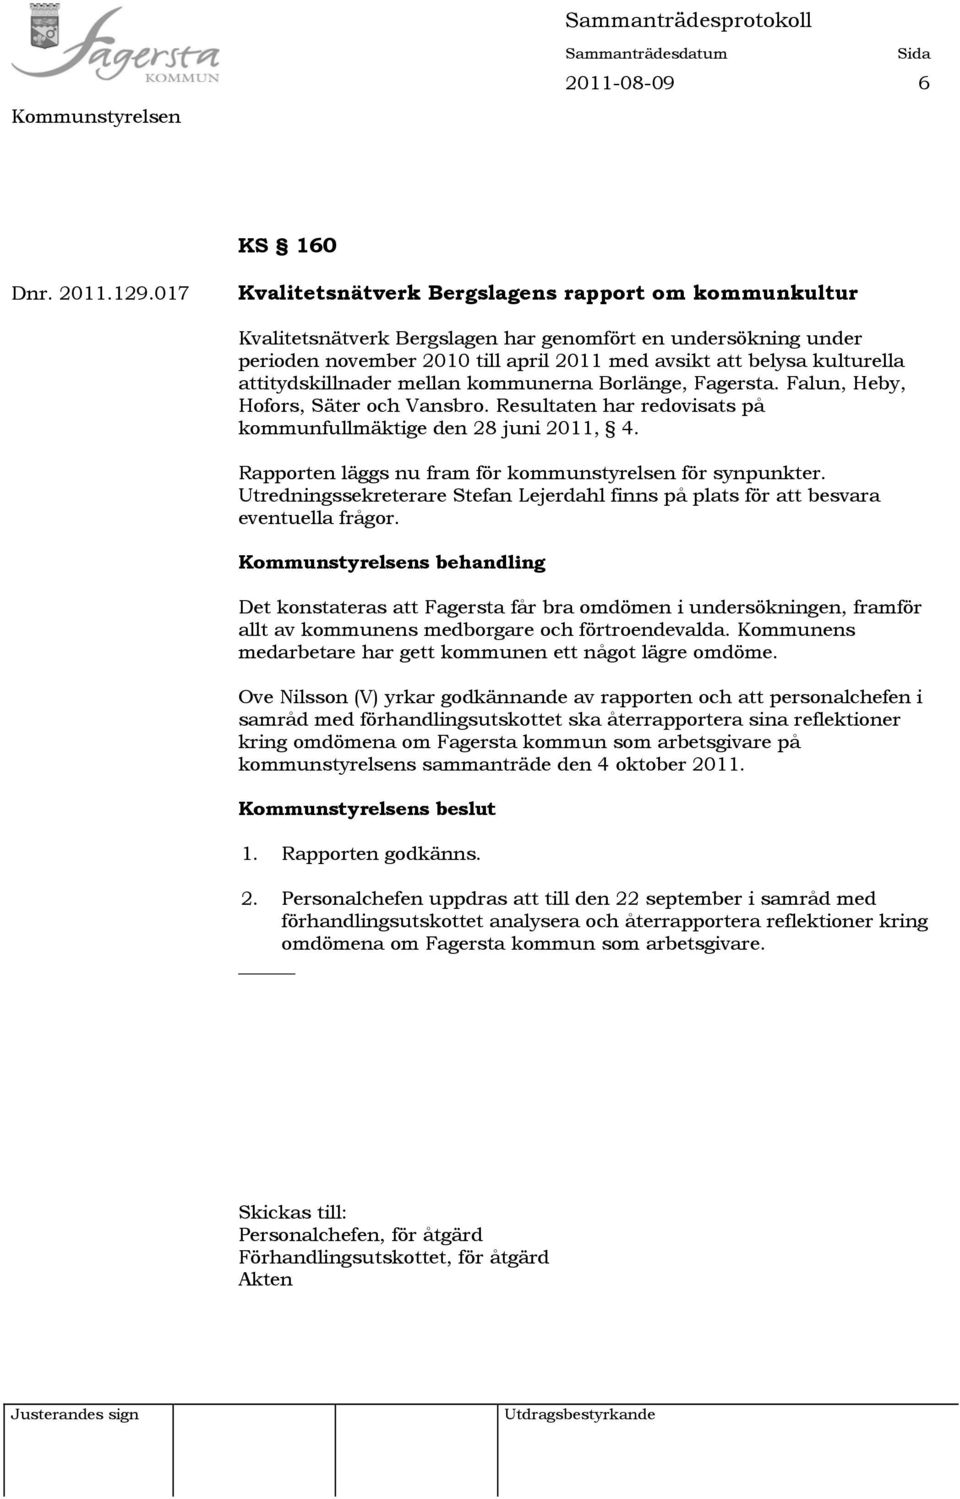 attitydskillnader mellan kommunerna Borlänge, Fagersta. Falun, Heby, Hofors, Säter och Vansbro. Resultaten har redovisats på kommunfullmäktige den 28 juni 2011, 4.